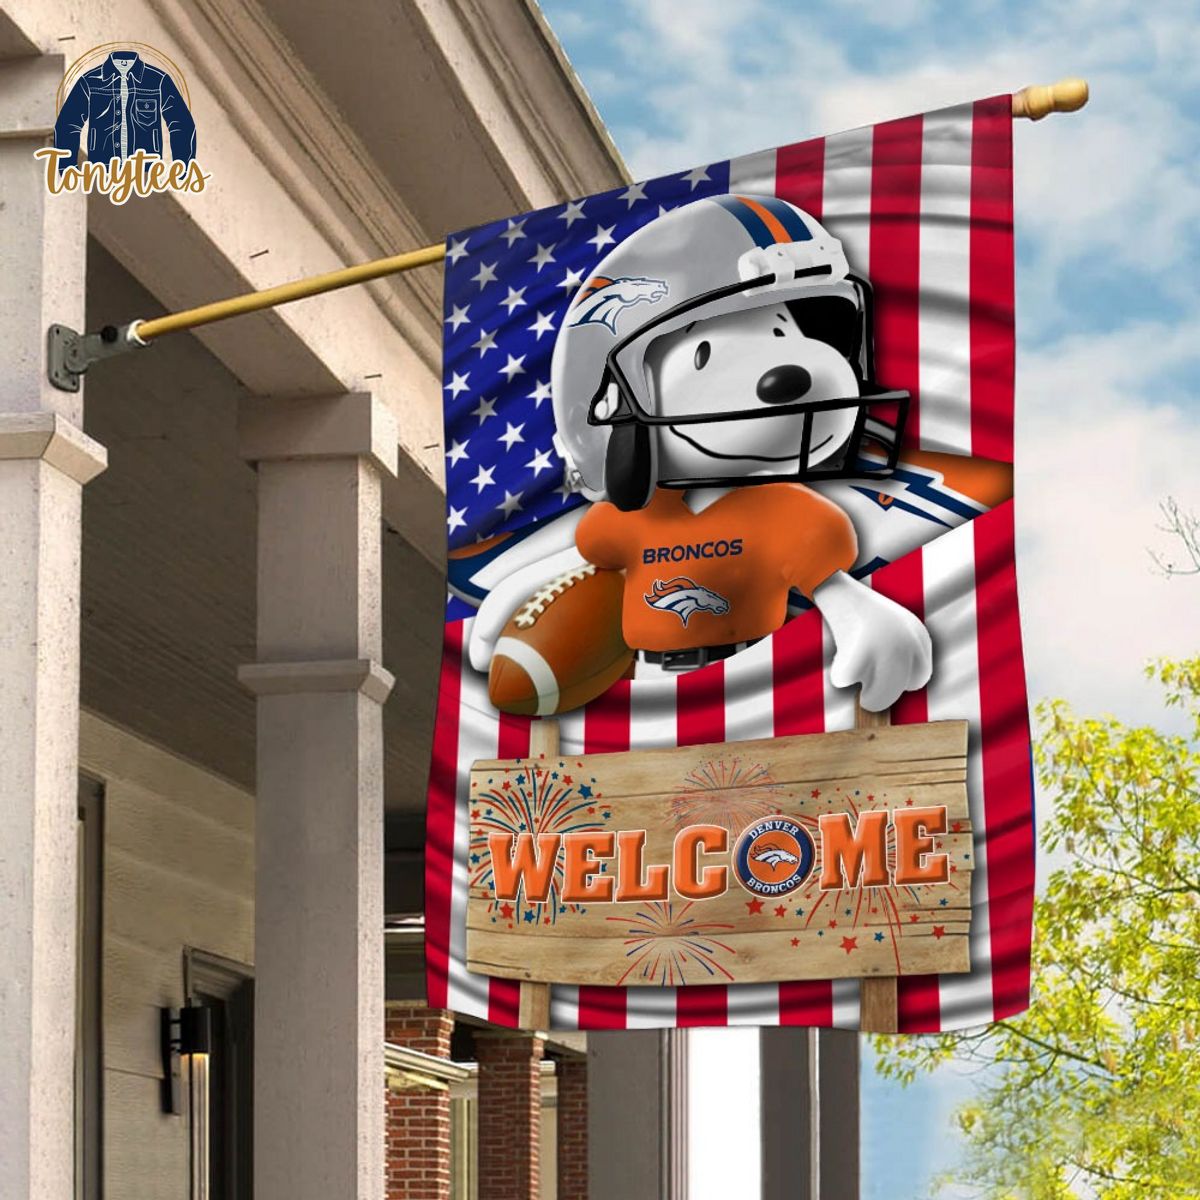 Denver Broncos Snoopy Peanuts Welcome Custom Name Garden Flag